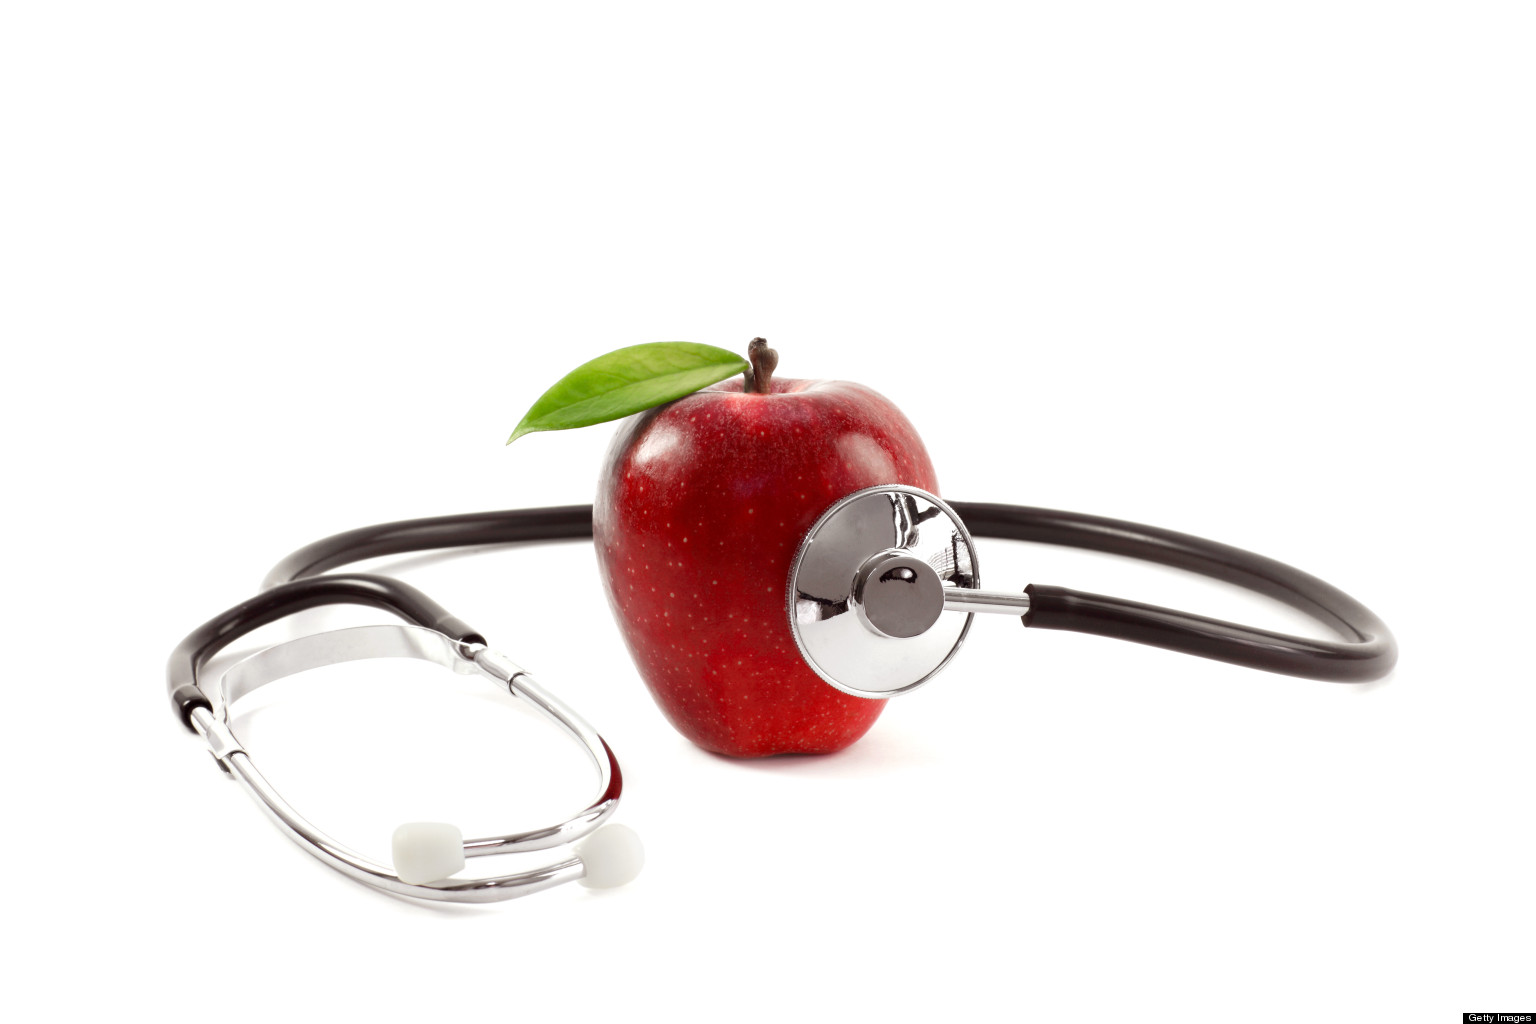 Яблоко в медицине. Яблоко с стетоскопом. Яблоко и стетоскоп и цветы.